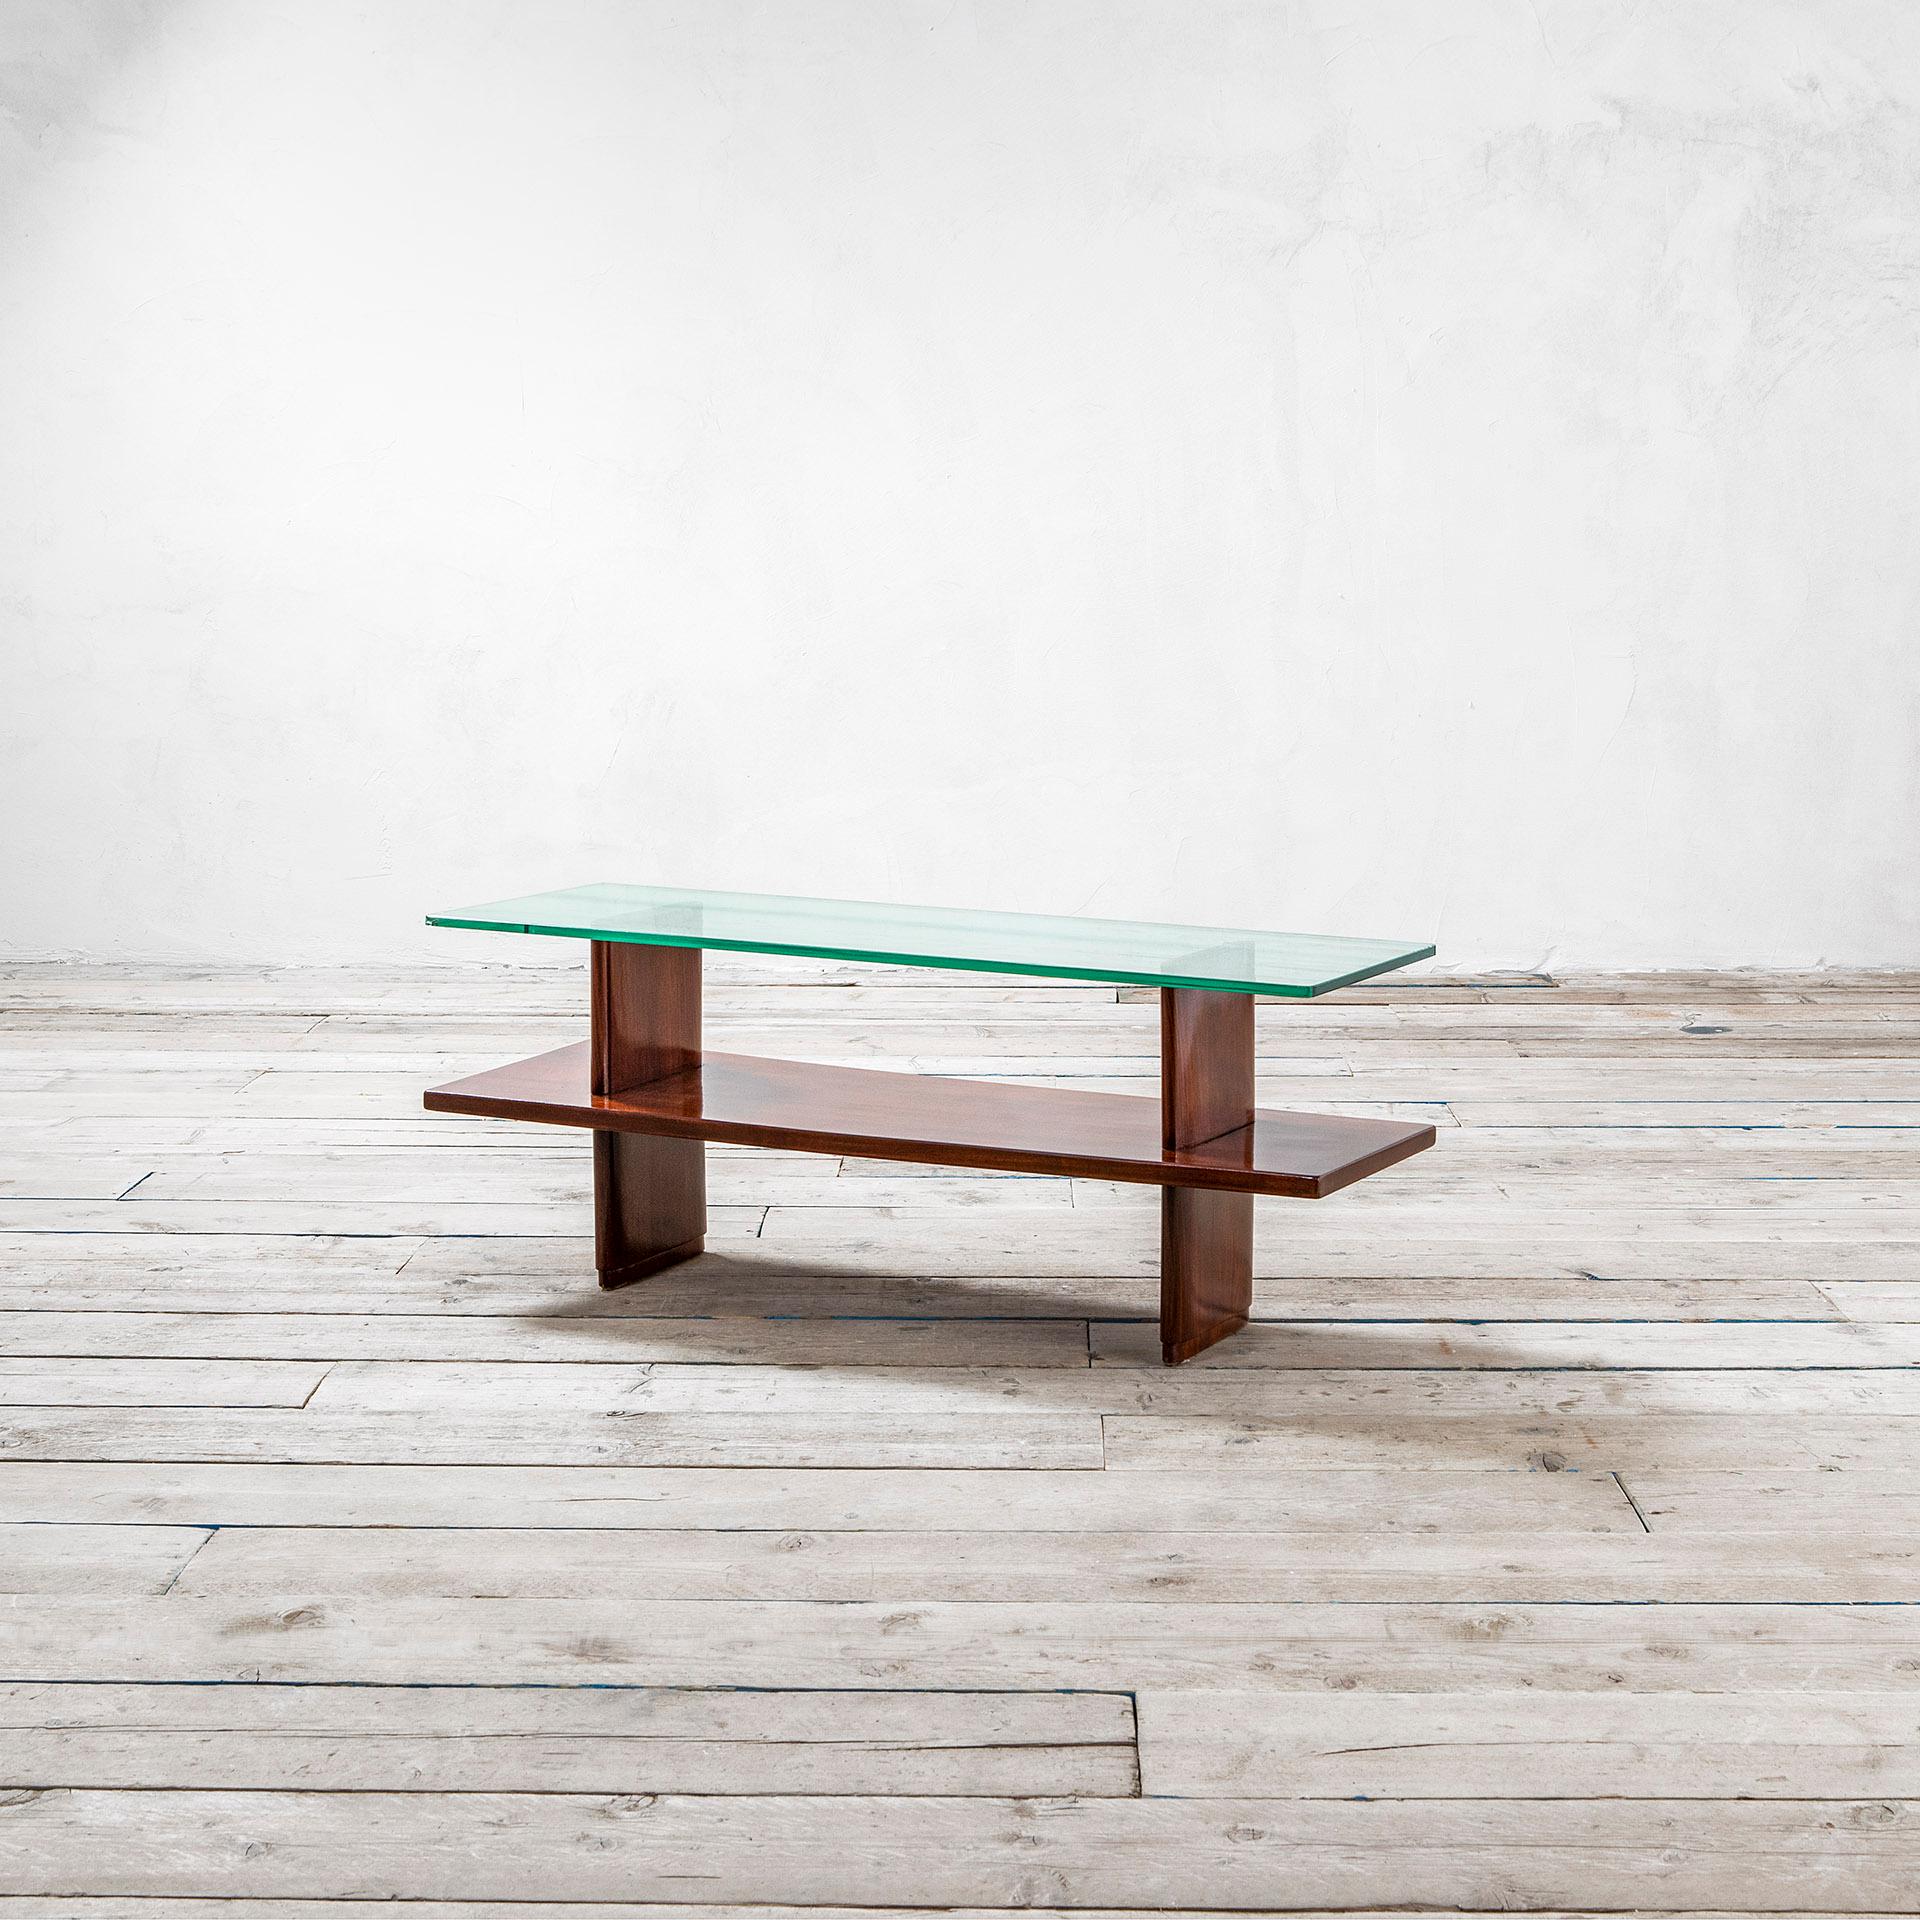 Couchtisch, entworfen von Osvaldo Borsani in den 40er Jahren. Der Tisch hat eine Holzstruktur und 2 Platten, eine aus Holz und eine aus Glas. Die Form des Tisches ist meist rechteckig, aus diesem Grund ist dieser Tisch besonders für schmale Räume